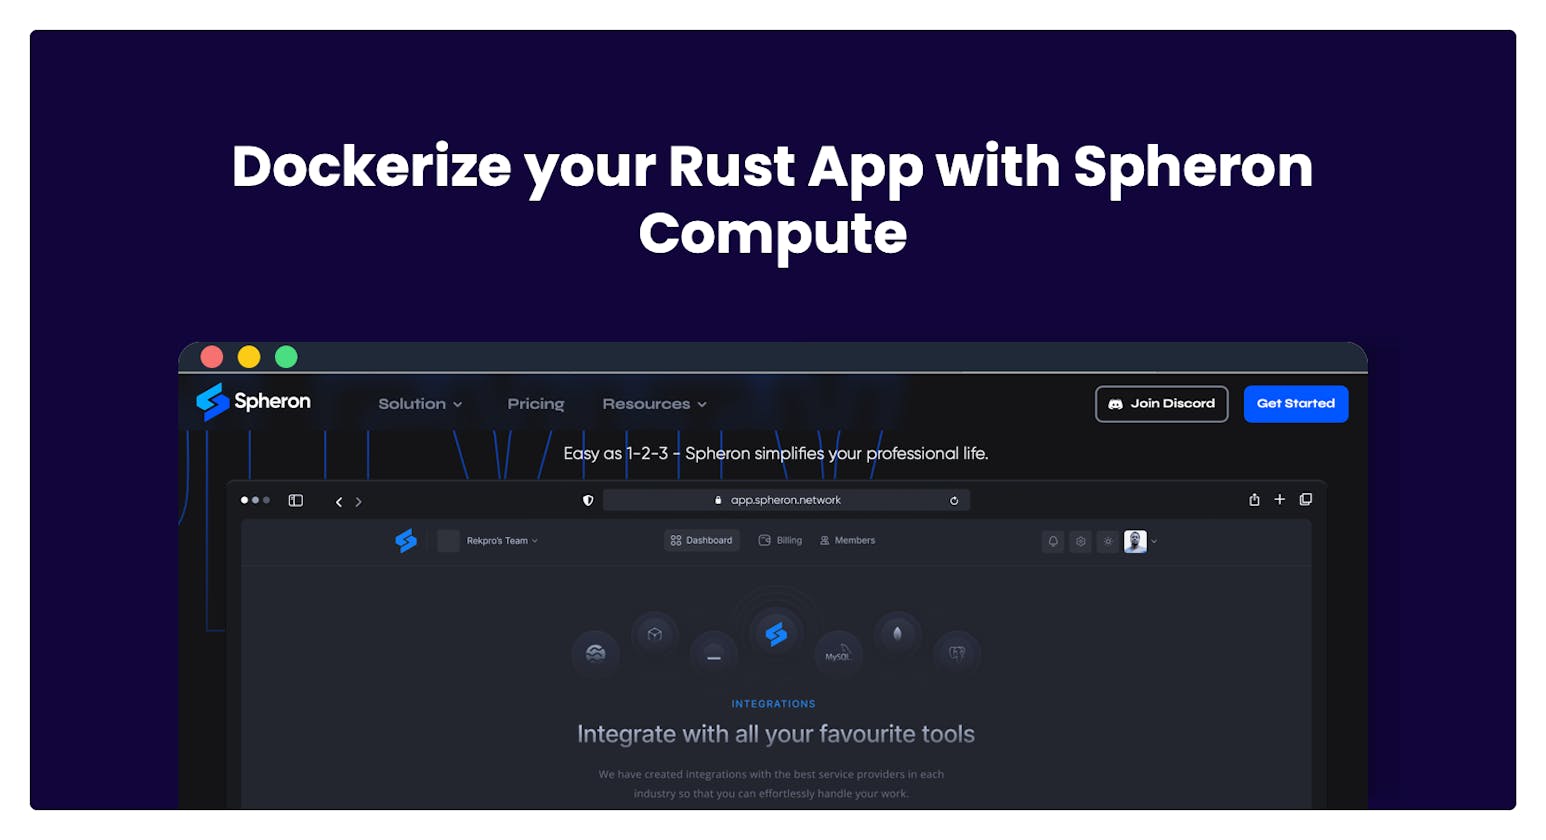 Dockerize your Rust App with Spheron Compute